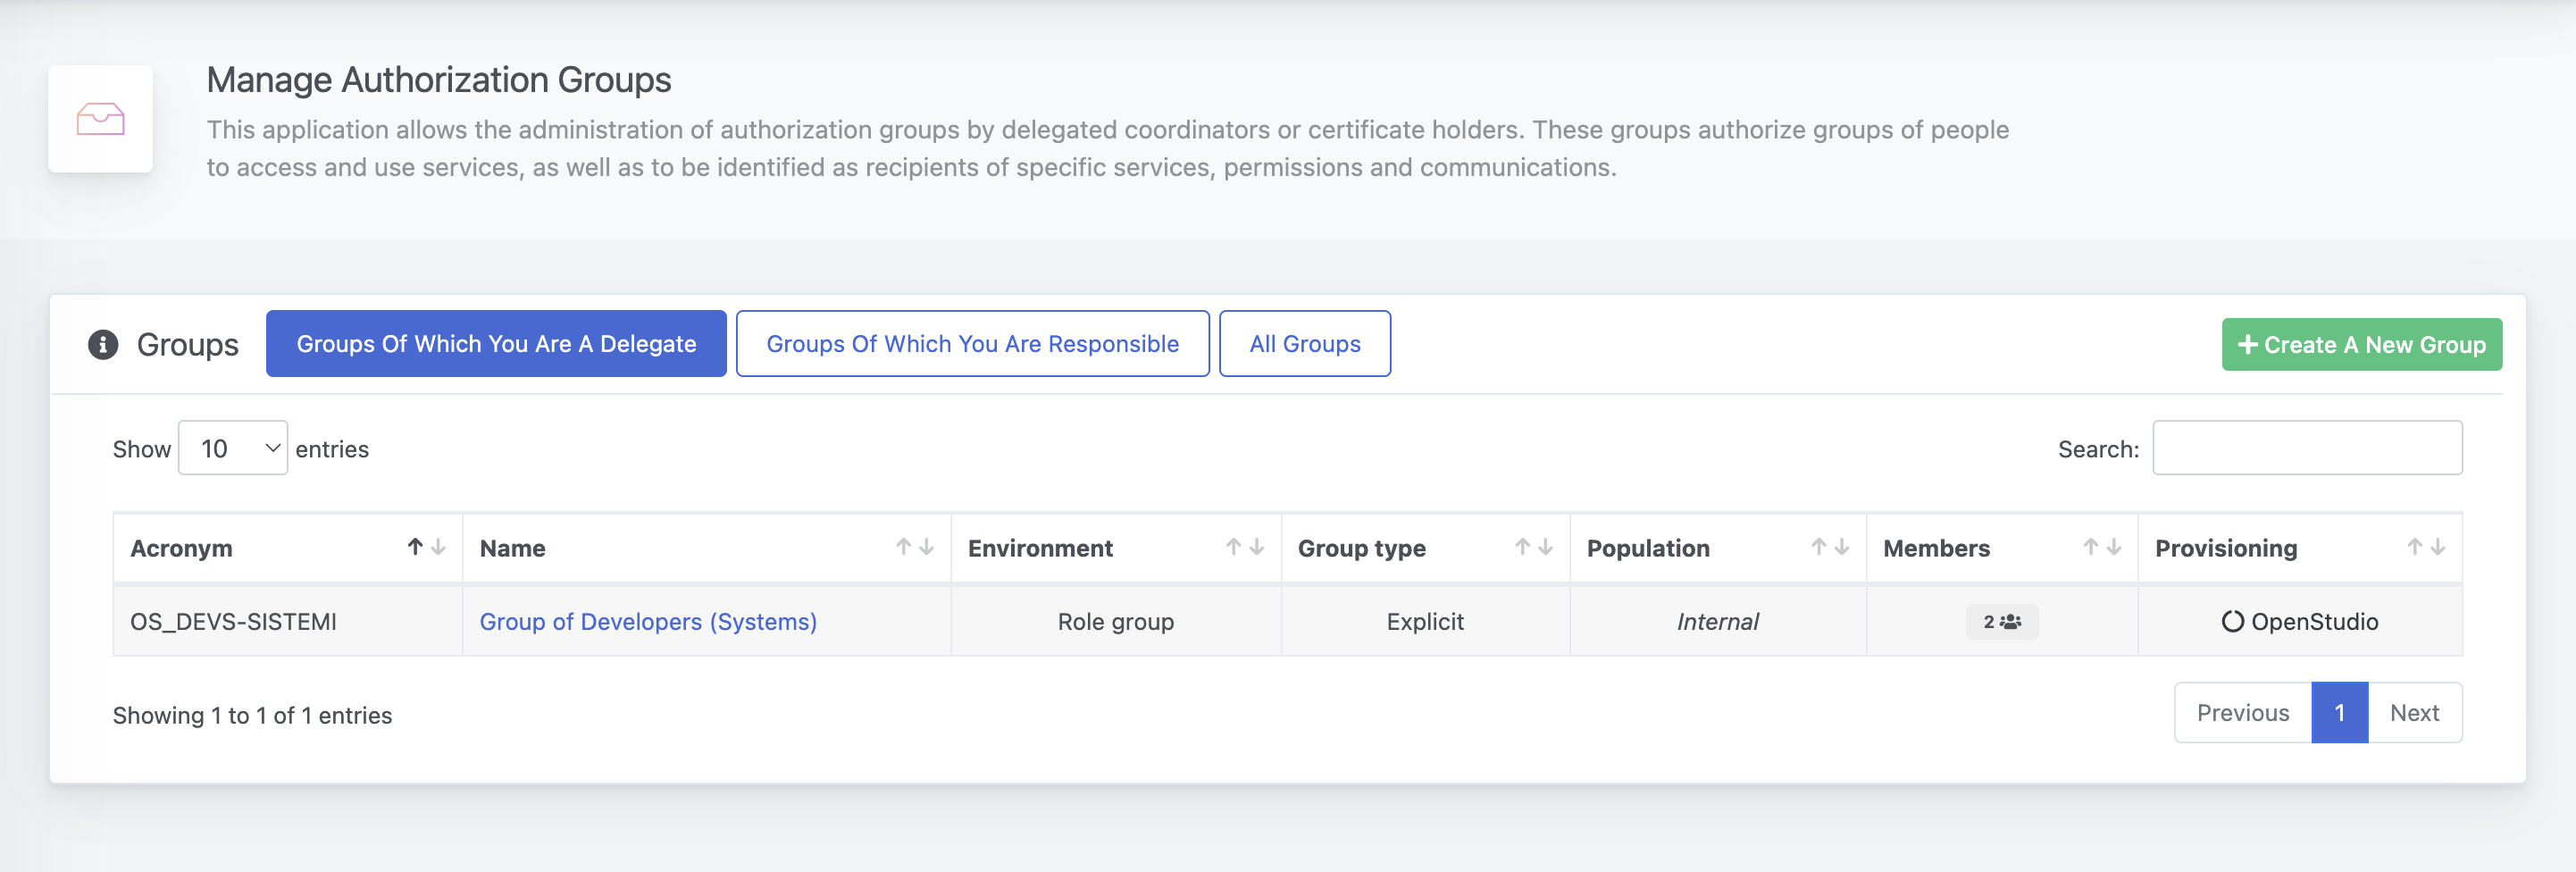 OpenStudio - Administrar grupos de autorización - Lista de grupos